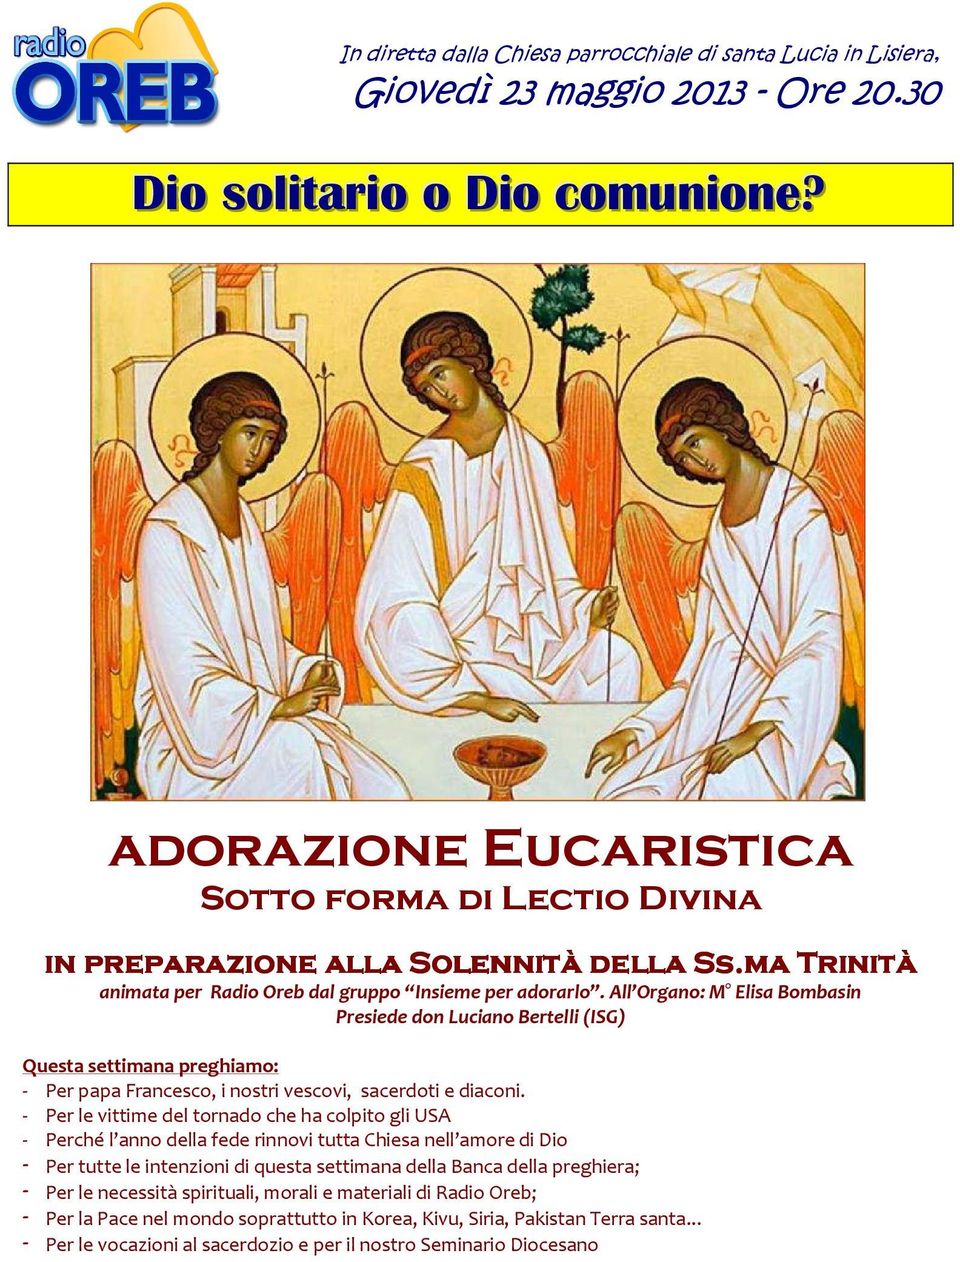 All Organo: M Elisa Bombasin Presiede don Luciano Bertelli (ISG) Questa settimana preghiamo: - Per papa Francesco, i nostri vescovi, sacerdoti e diaconi.